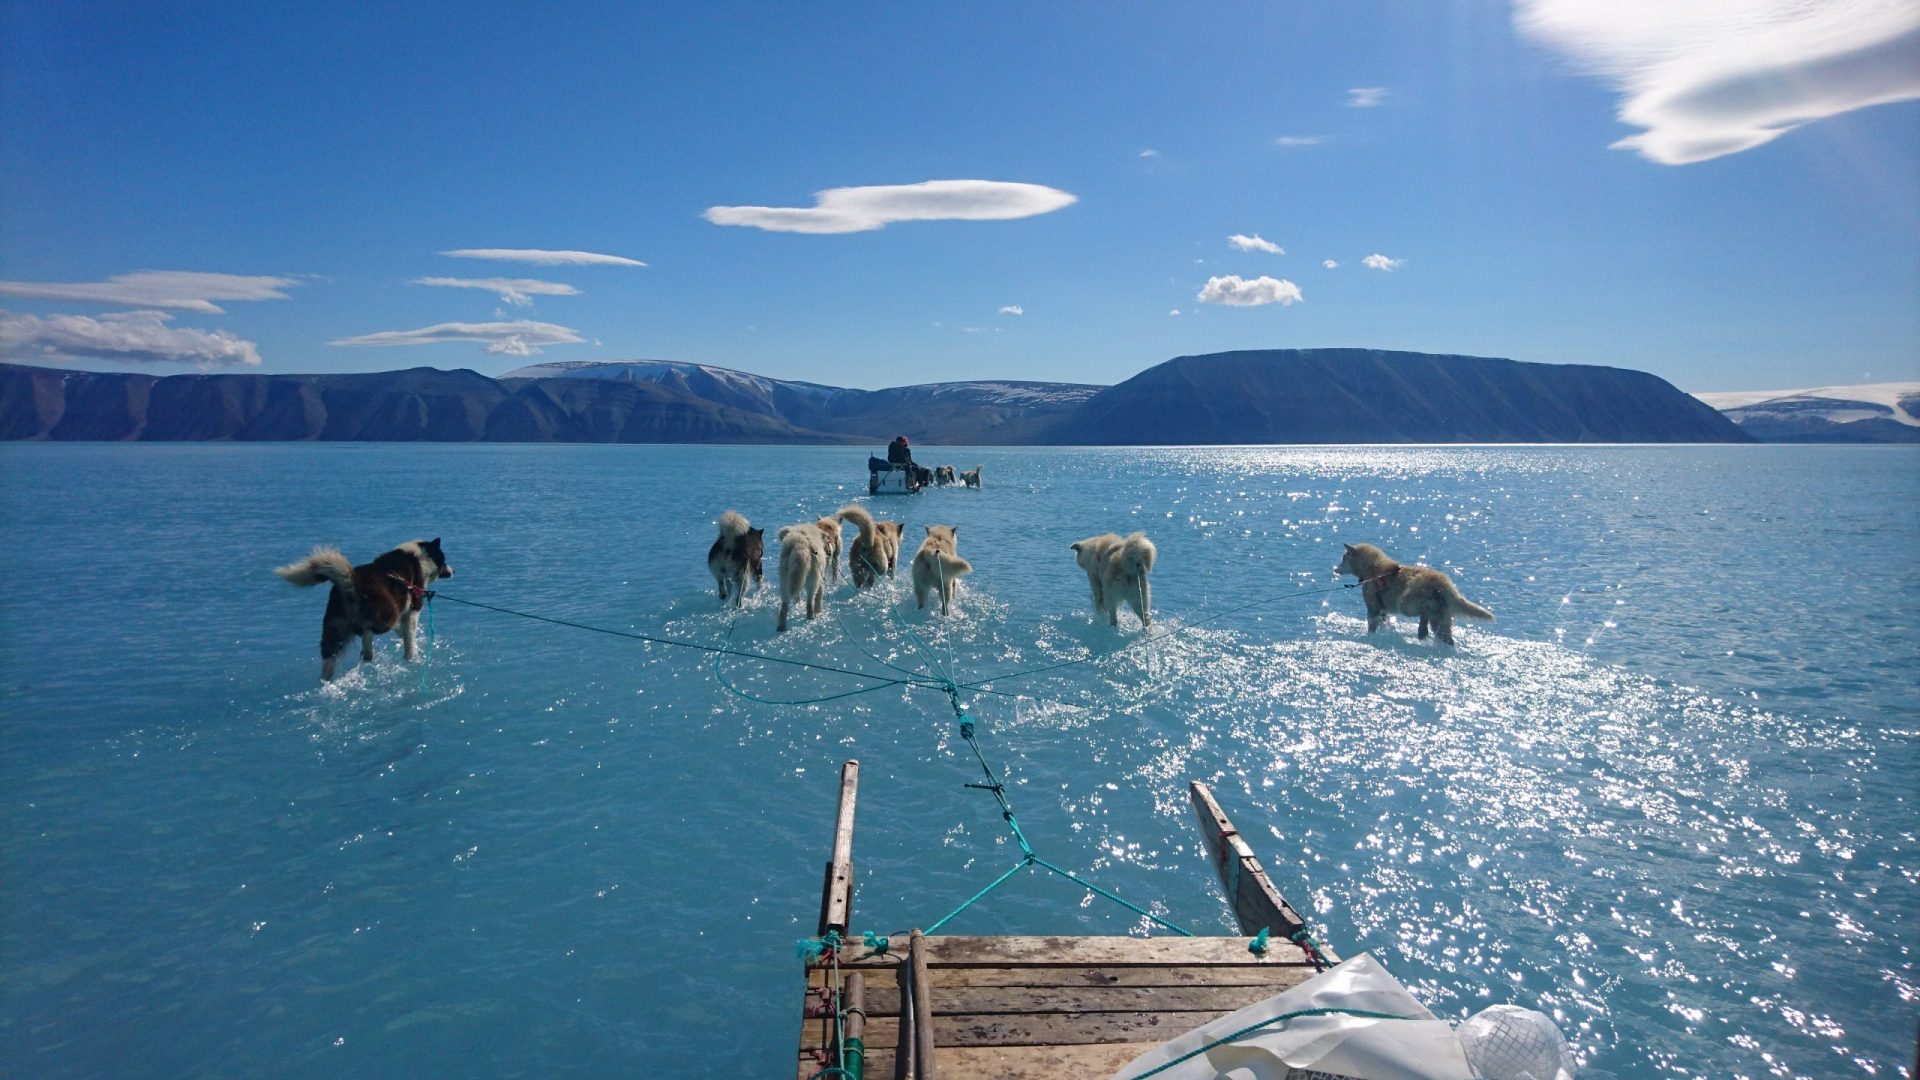 Gronelândia. Imagem viral chama atenção para aquecimento global